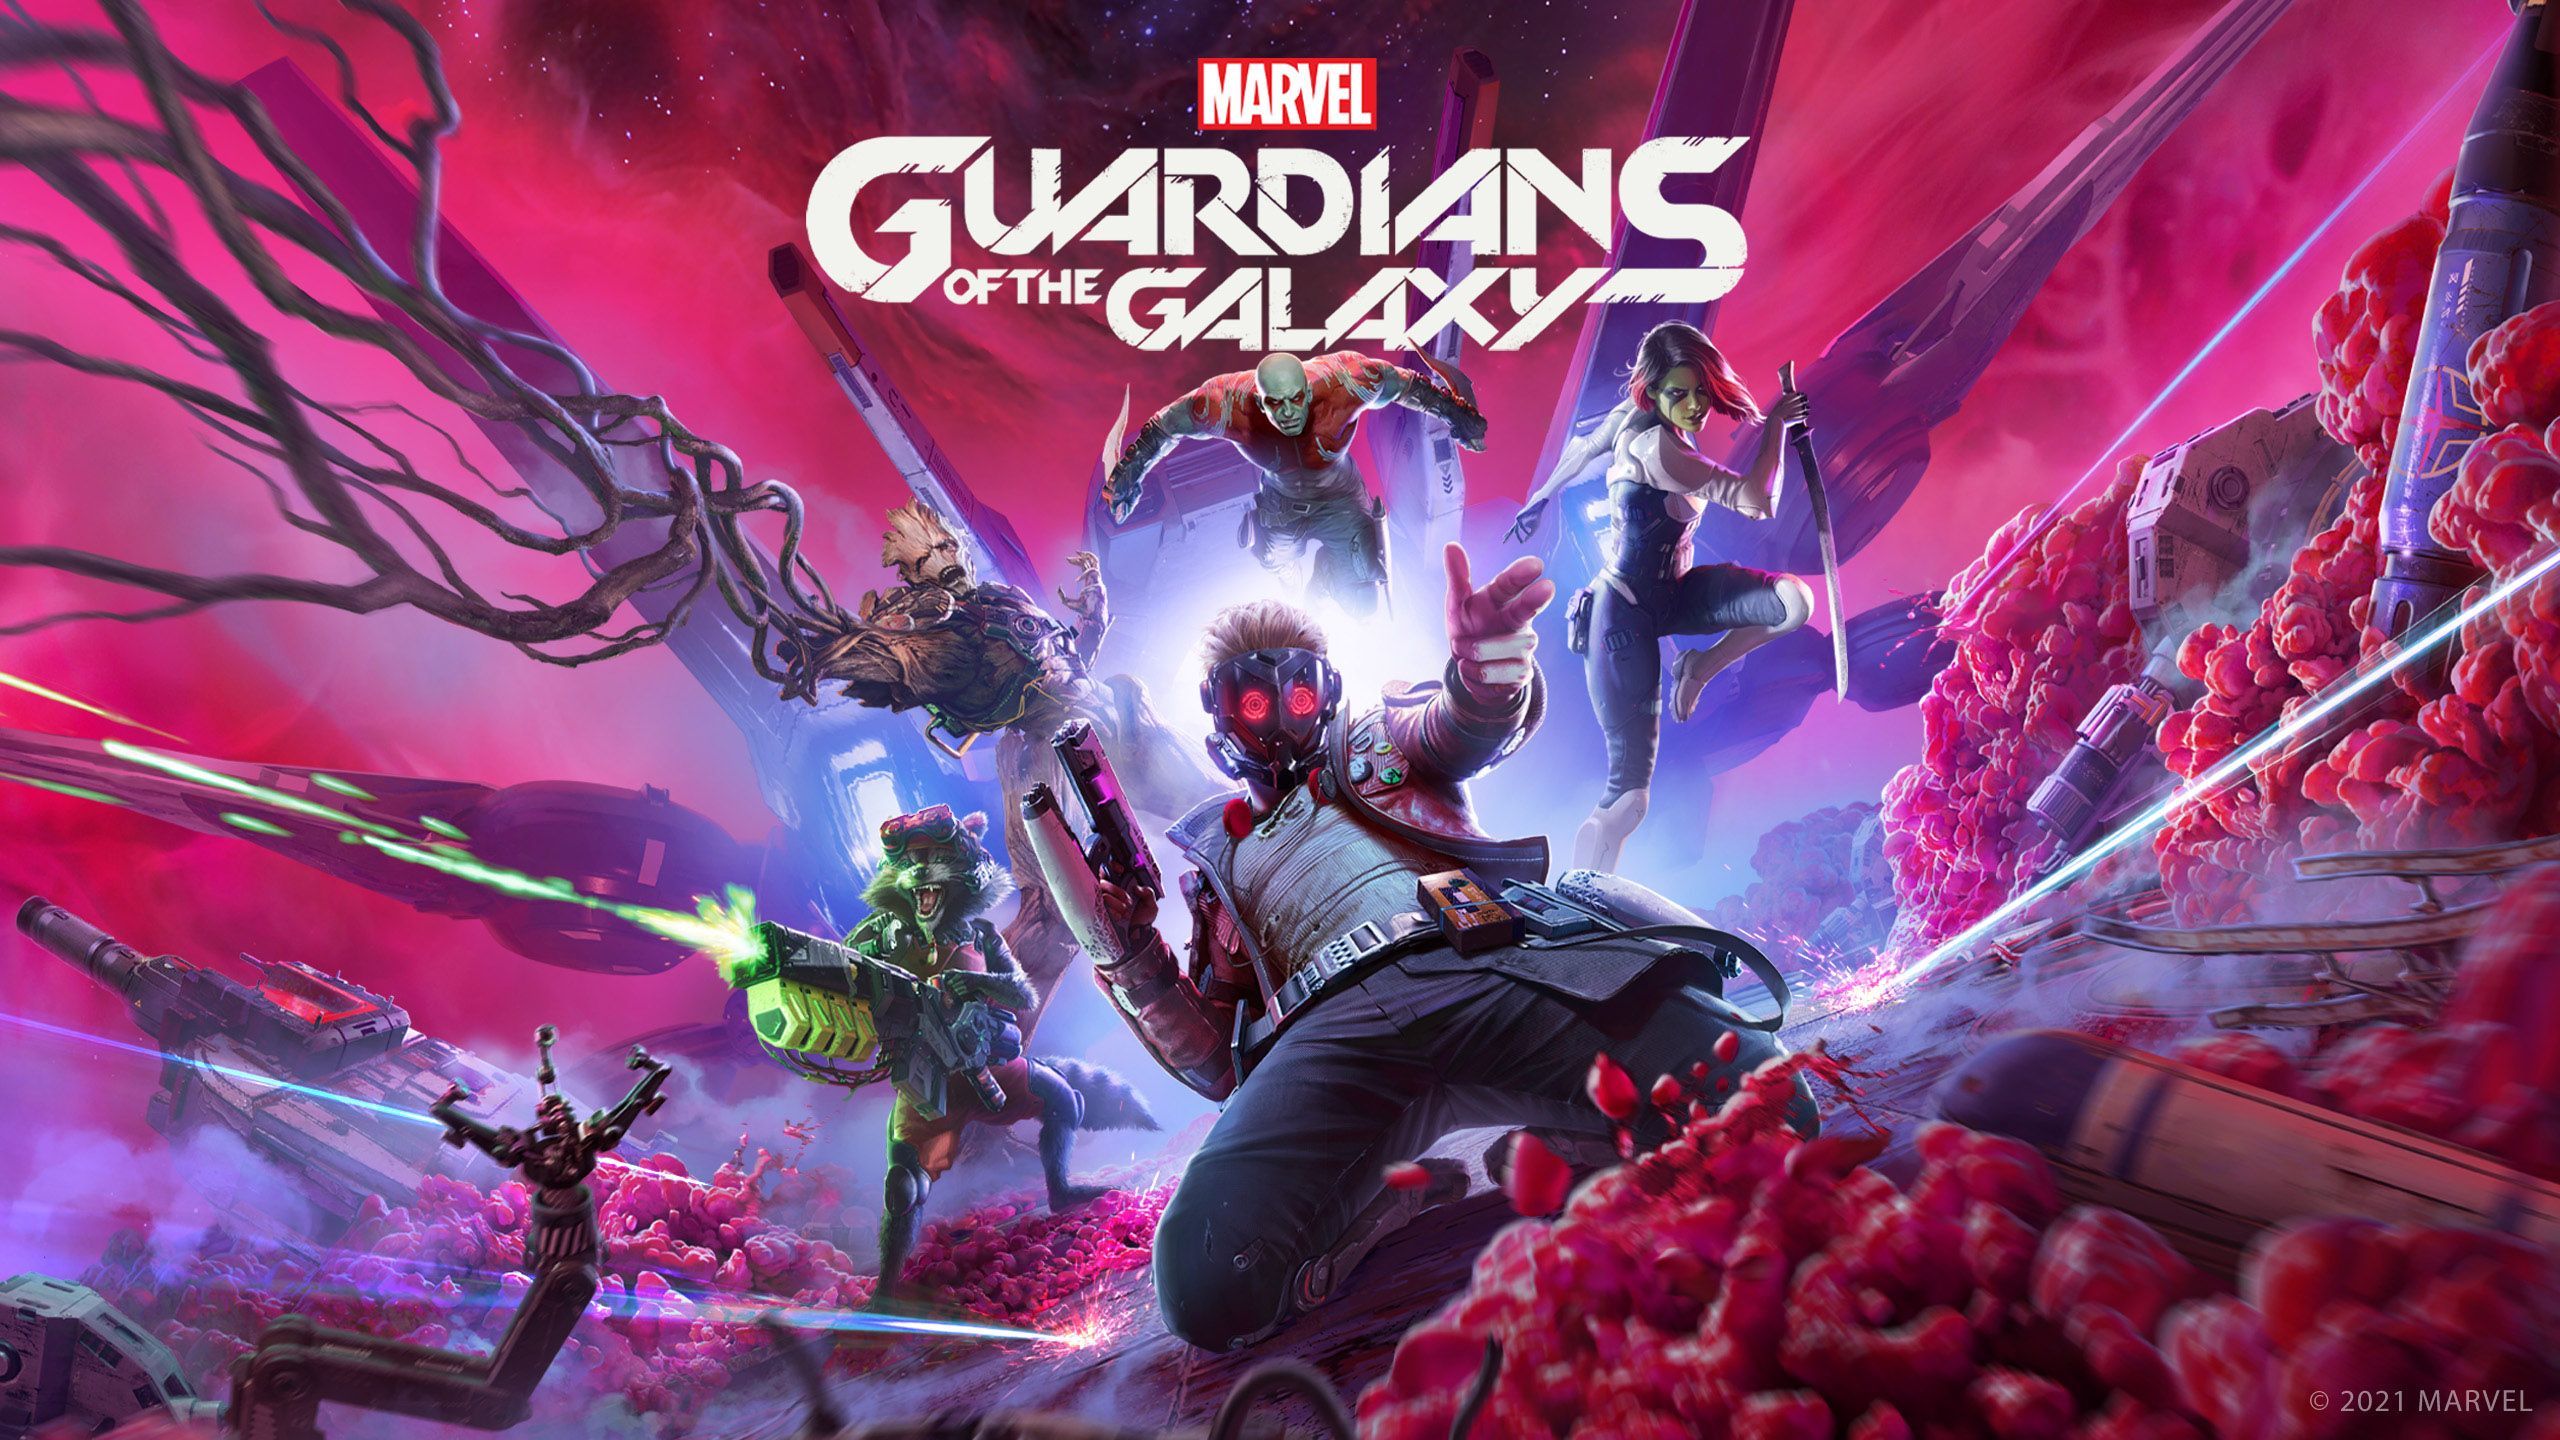 8 Ґрутів із 10: Marvel's Guardians of the Galaxy отримала оцінки від критиків - Ігри - games